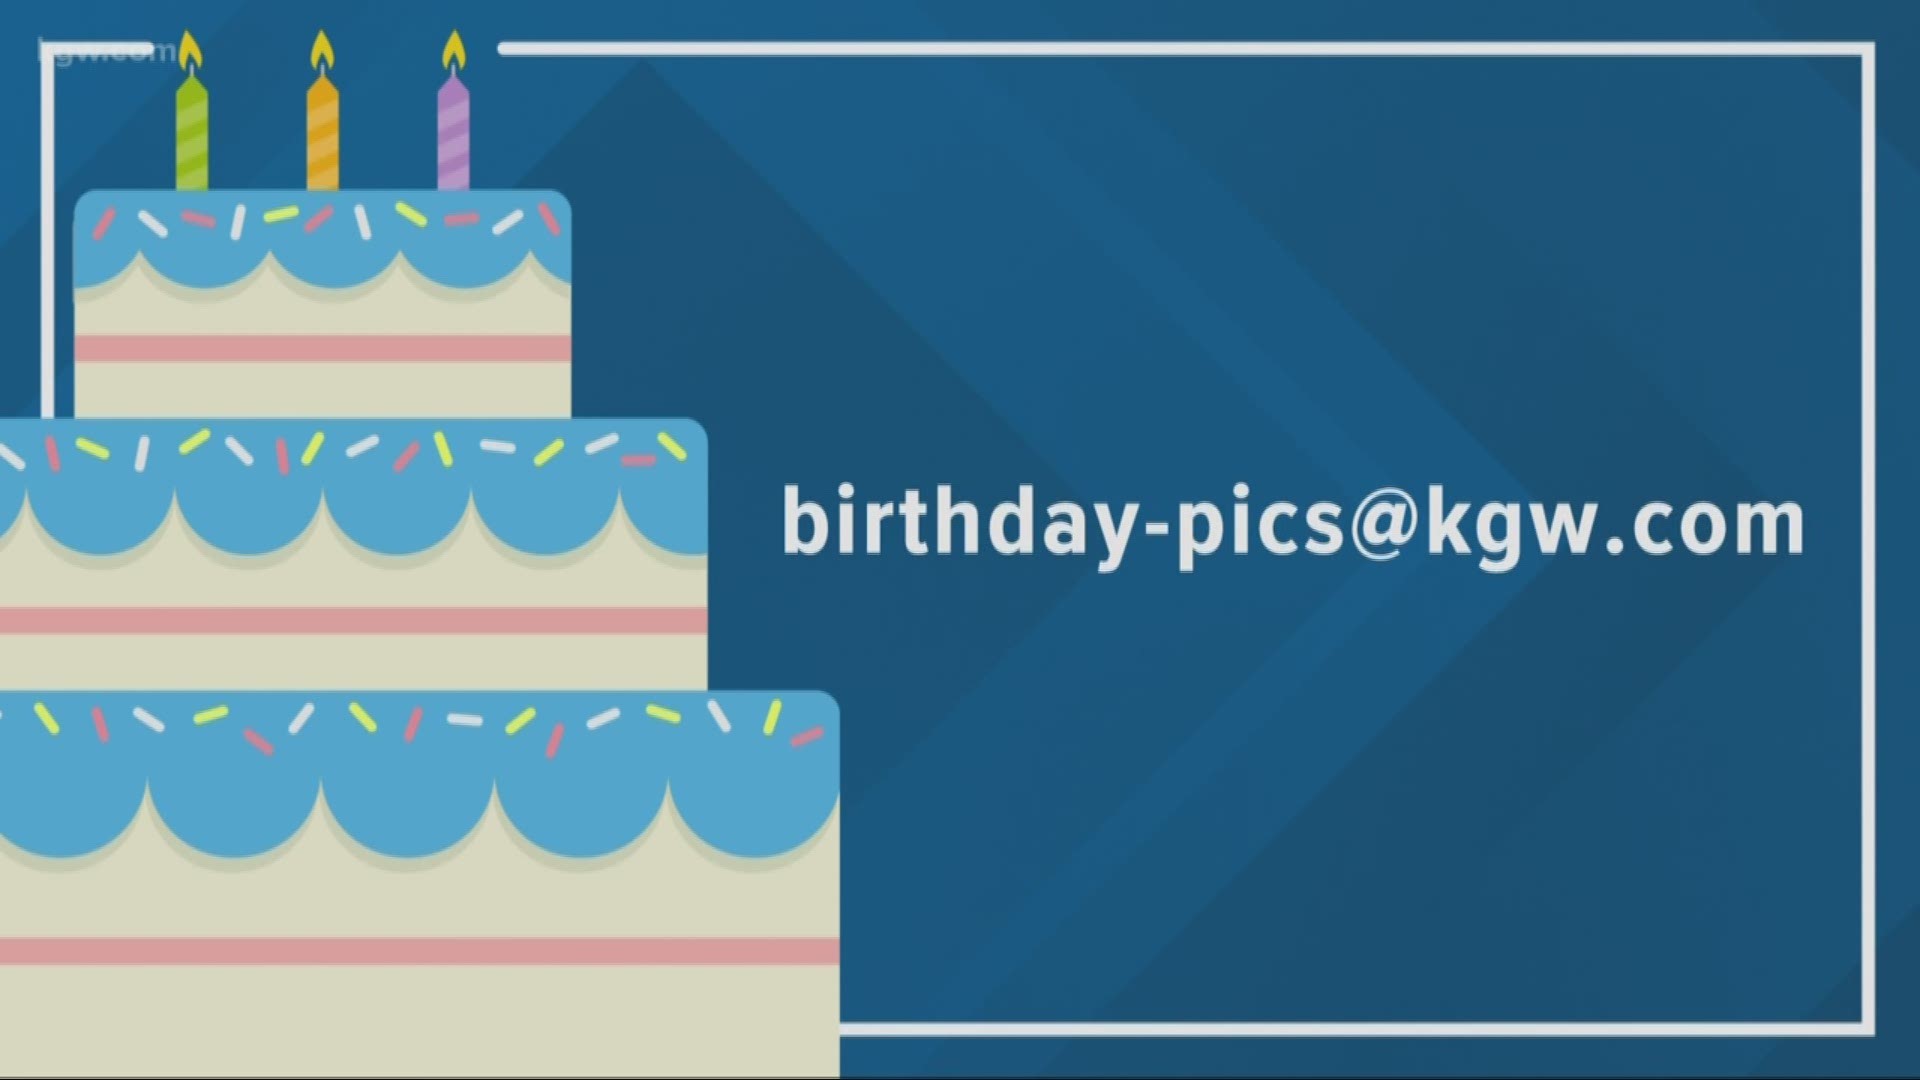 KGW viewer birthdays: 10-16-18